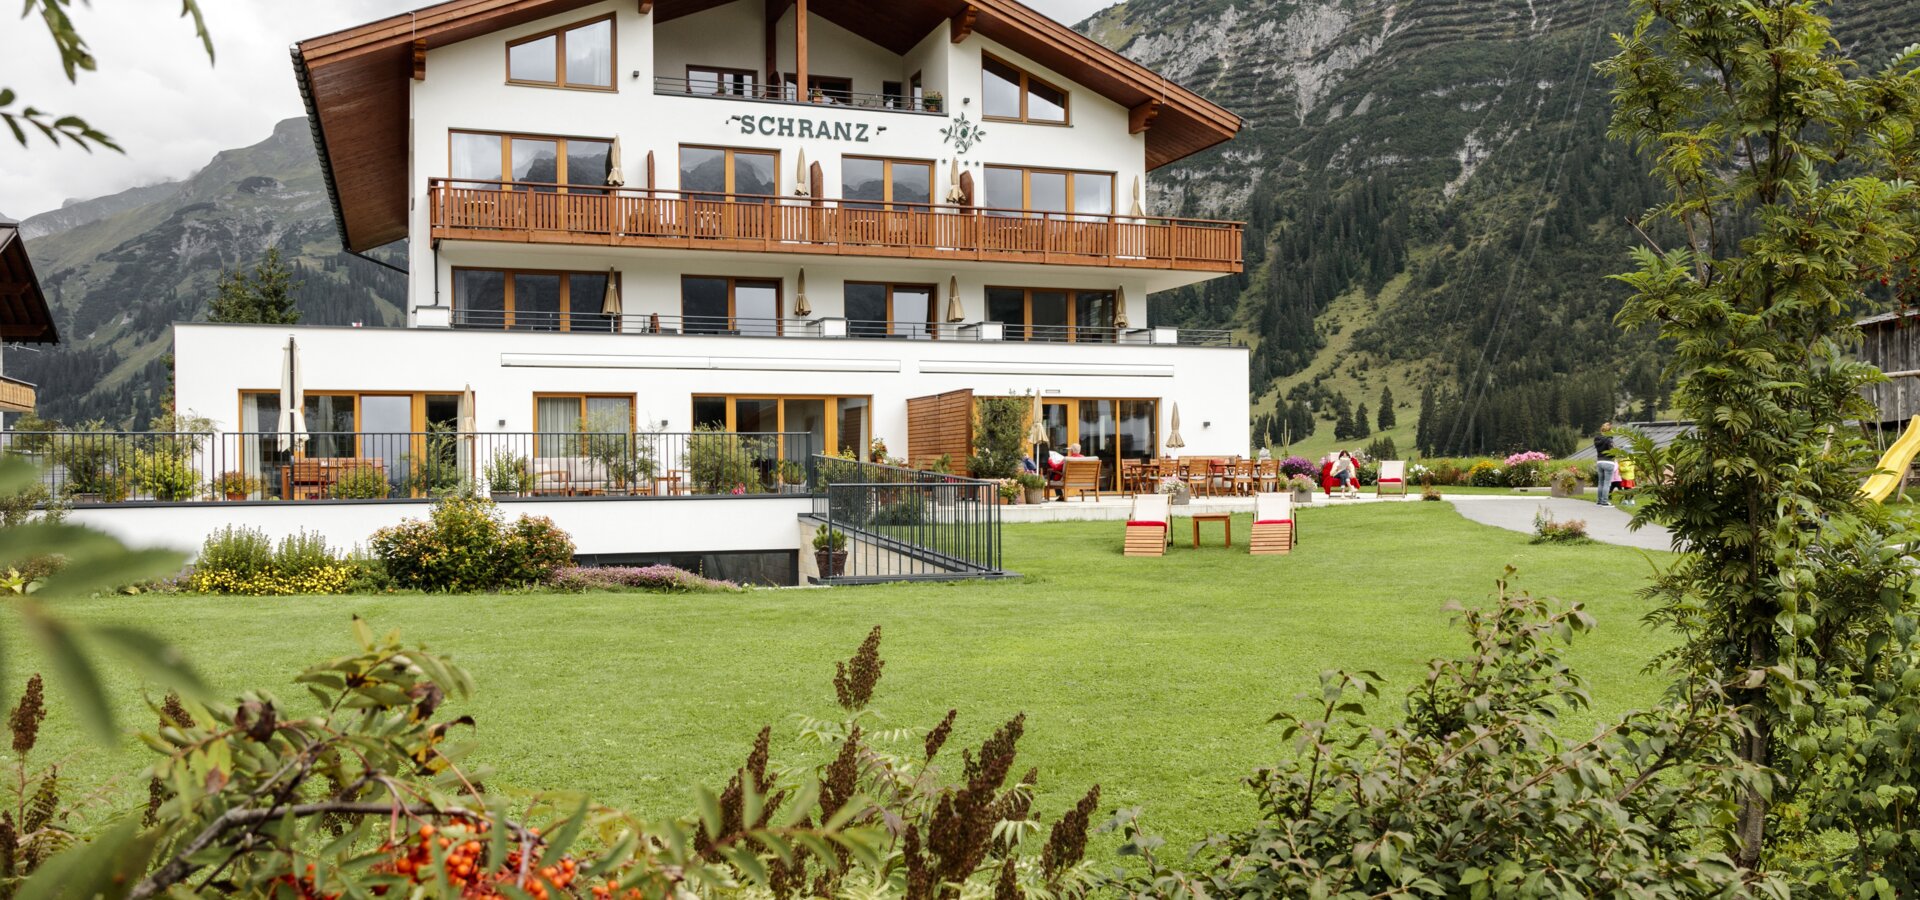 accommodation Schranz Lech am Arlberg